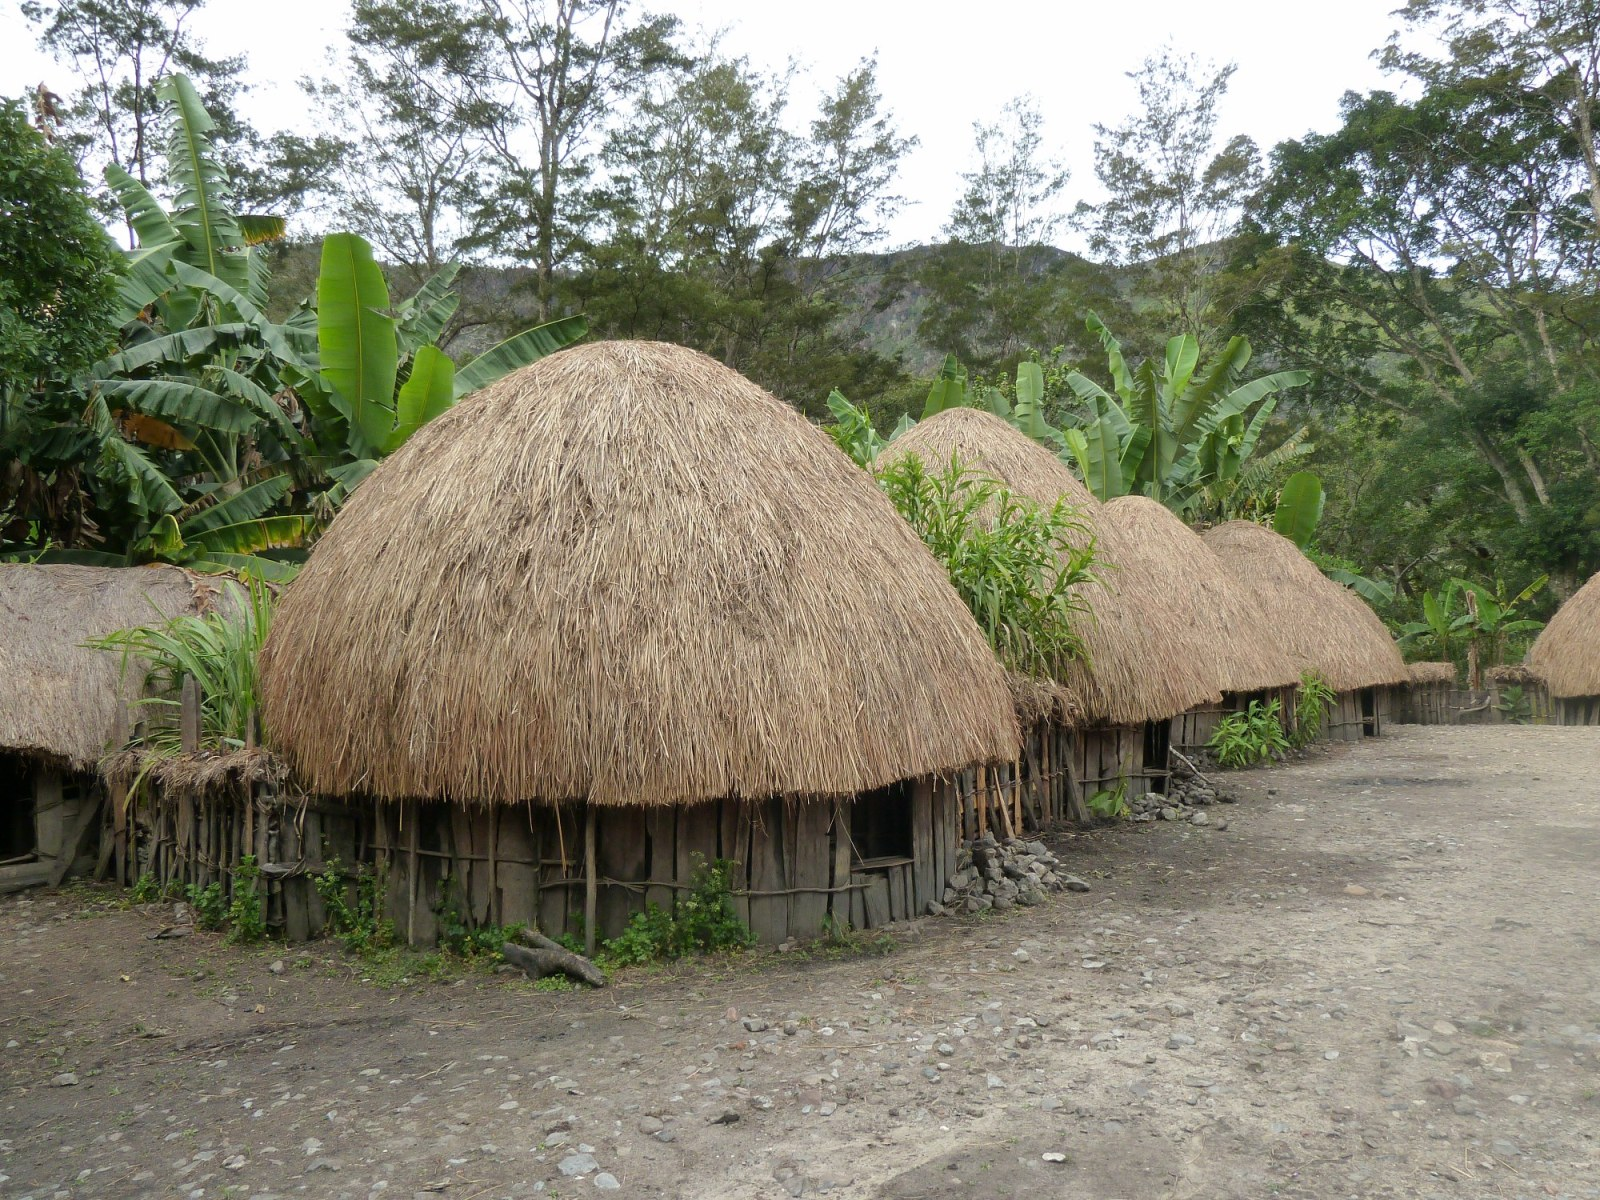 Rumah adat yang berasal dari papua adalah rumah